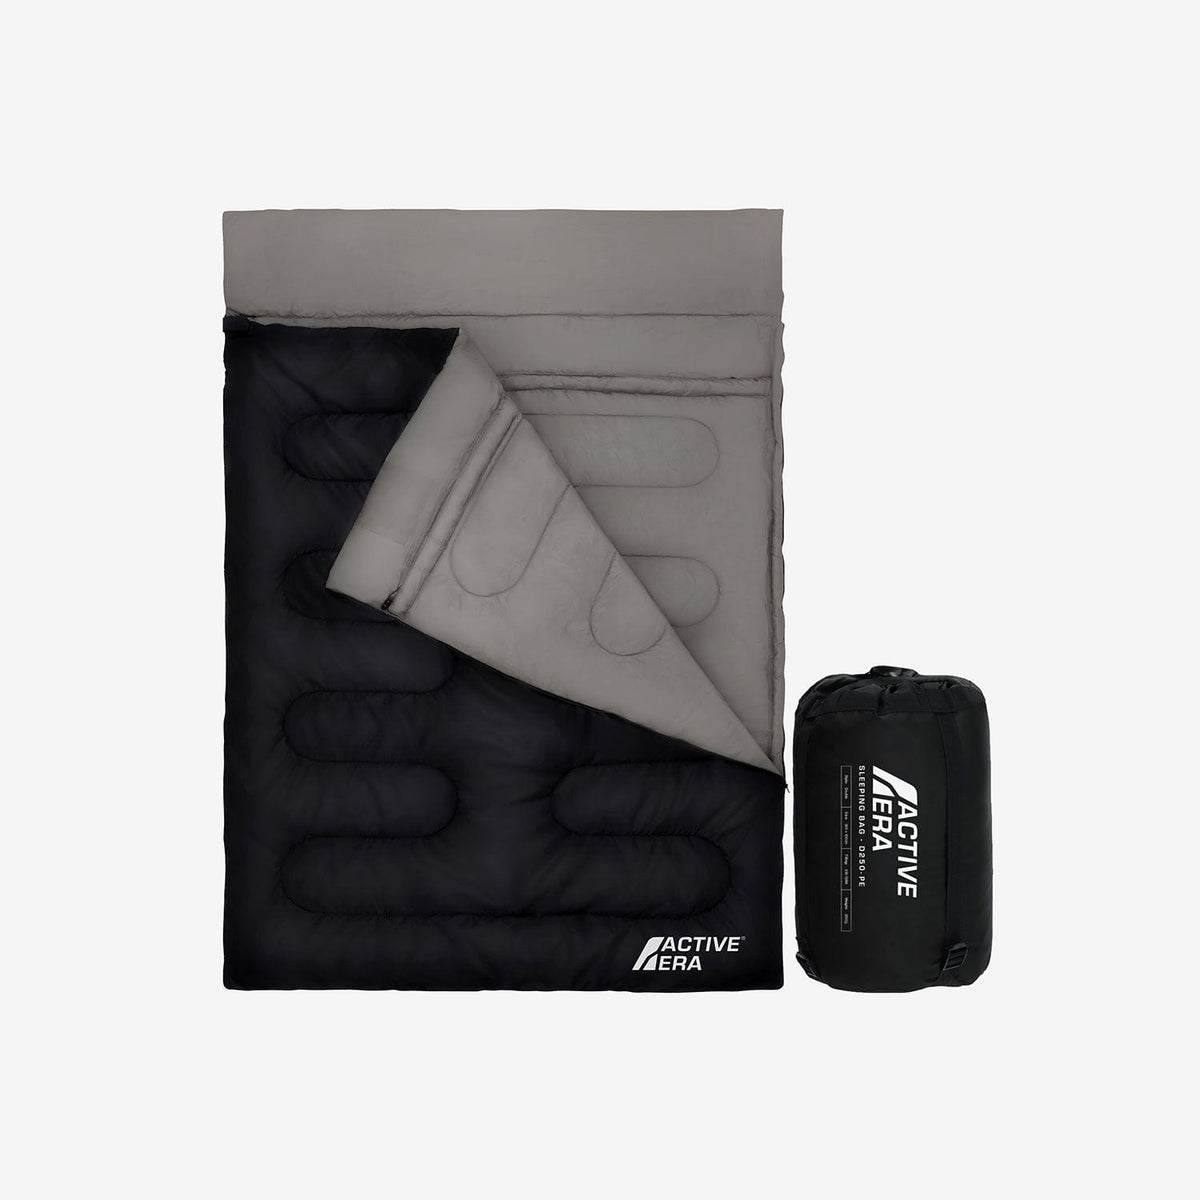 Saco de dormir de sobre ligero y cálido de primera calidad (200 g